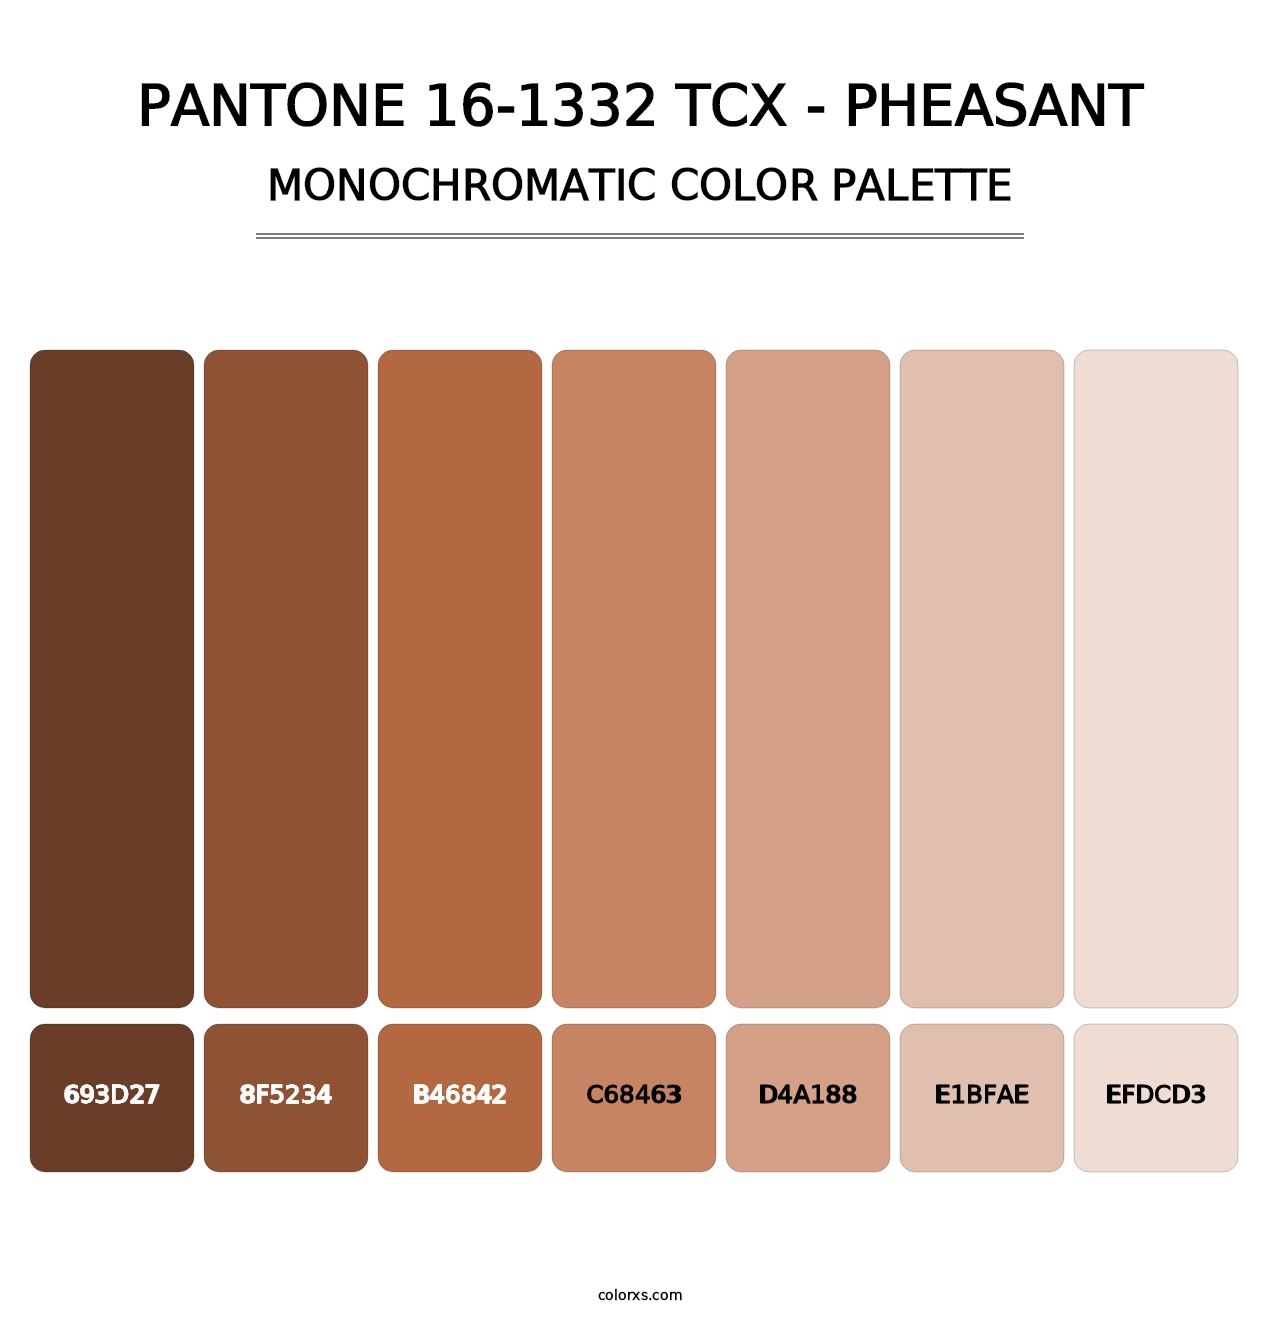 PANTONE 16-1332 TCX - Pheasant - Monochromatic Color Palette